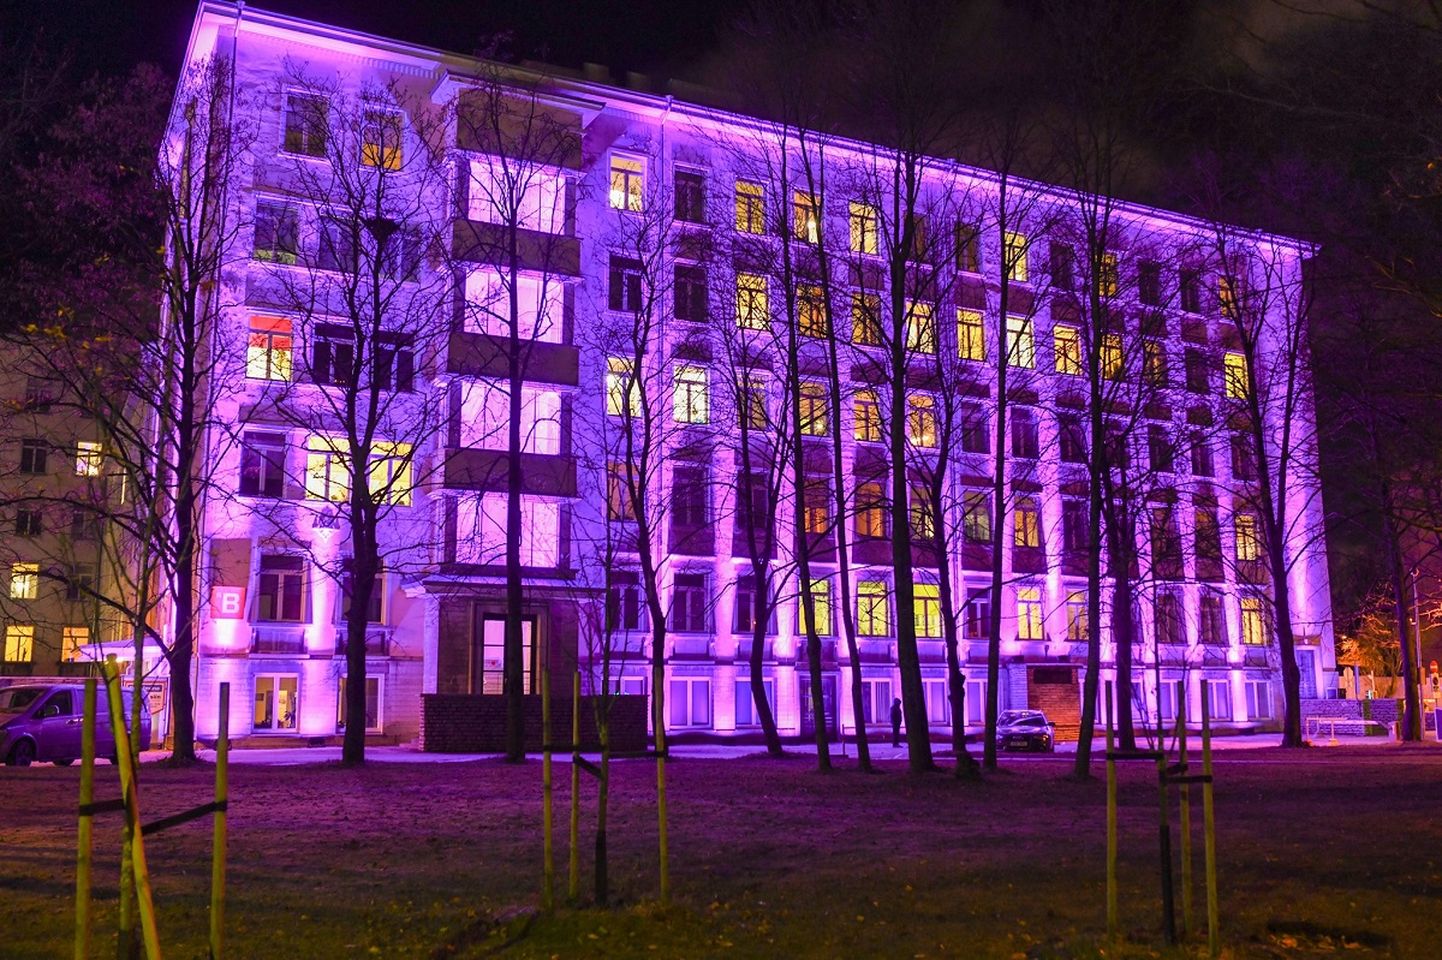 Rahvusvahelise enneaegse sünni päeva puhul värvub Ida-Tallinna Keskhaigla sünnitusmaja 16. novembri õhtul kella 18-st alates üheks ööpäevaks sirelilillaks, sest just see värv on enneaegsete tunnusvärviks, mis tähistab uue elu algust ning sümboliseerib optimismi.